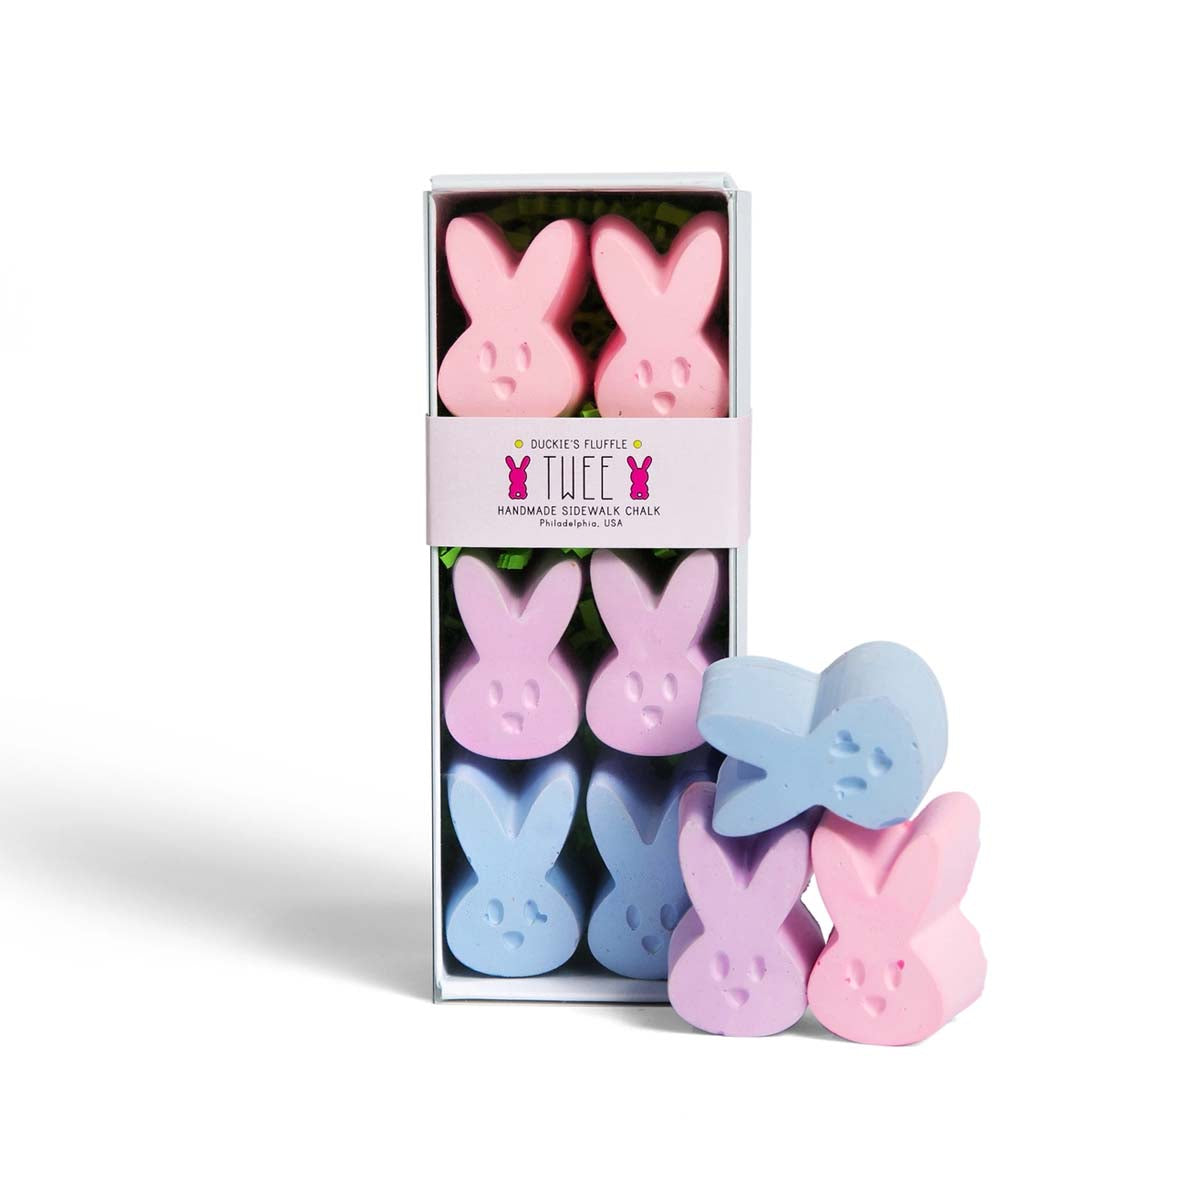 Voor creatieve kindjes: stoepkrijt duckie's fluffle roze van TWEE. Een set bestaat uit 6 konijntjes in de kleuren roze, paars en blauw. Biologisch afbreekbaar, herbruikbaar en niet toxisch en plasticvrij. VanZus